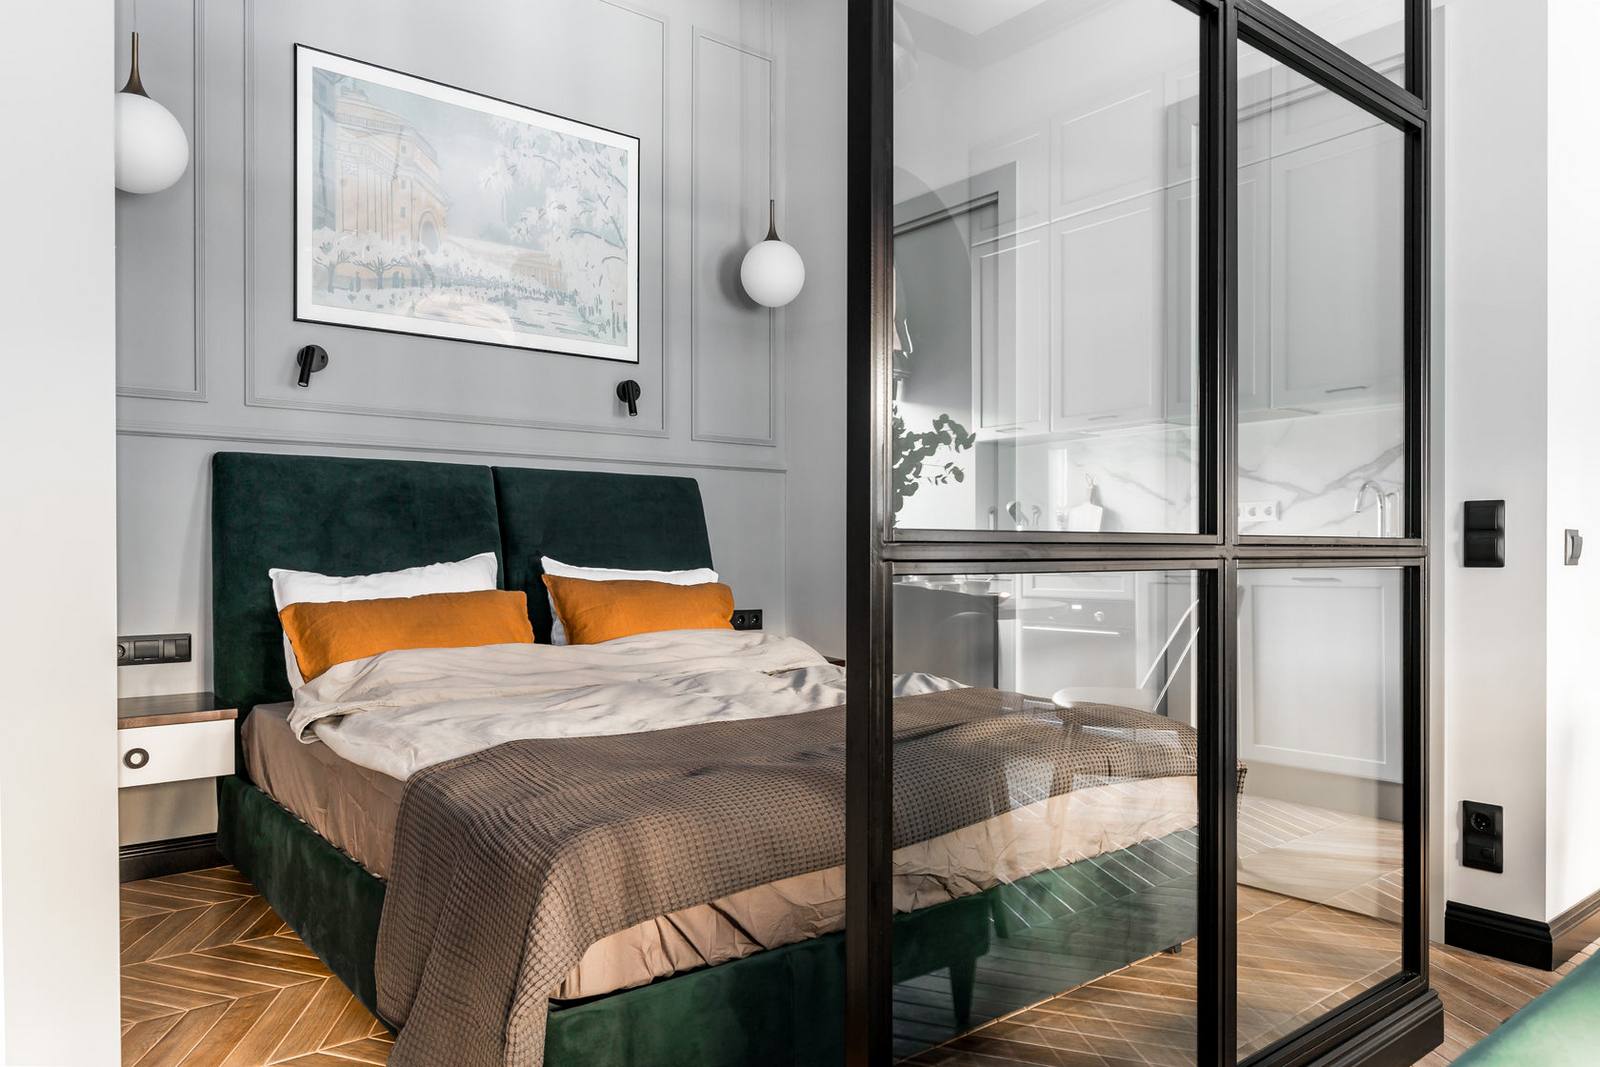 Khu vực phòng ngủ sử dụng khung giường bọc vải màu xanh ngọc lục bảo cùng những chiếc gối màu cam tạo sự kết nối bằng thị giác với phòng khách. Bức tranh thành phố của nước Nga xinh đẹp được trang trí ngay bức tường phía trên đầu giường.